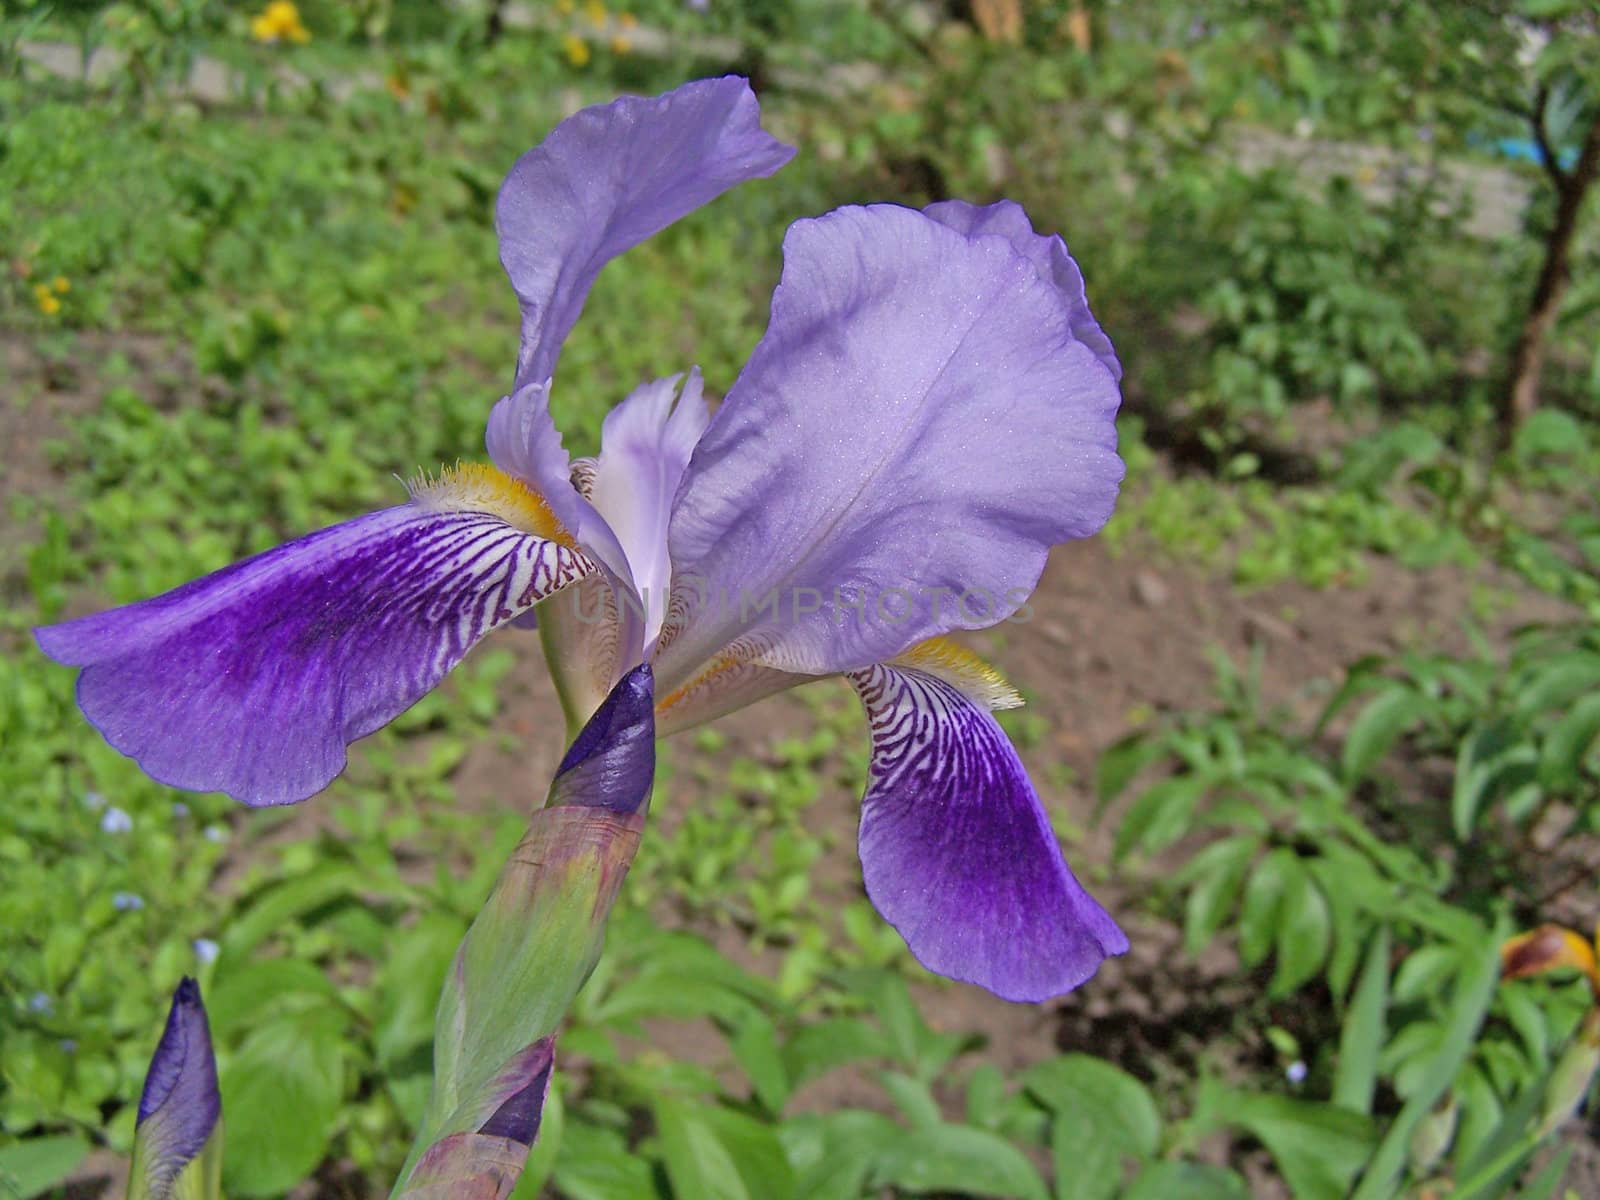 Sparkling iris by Lessadar